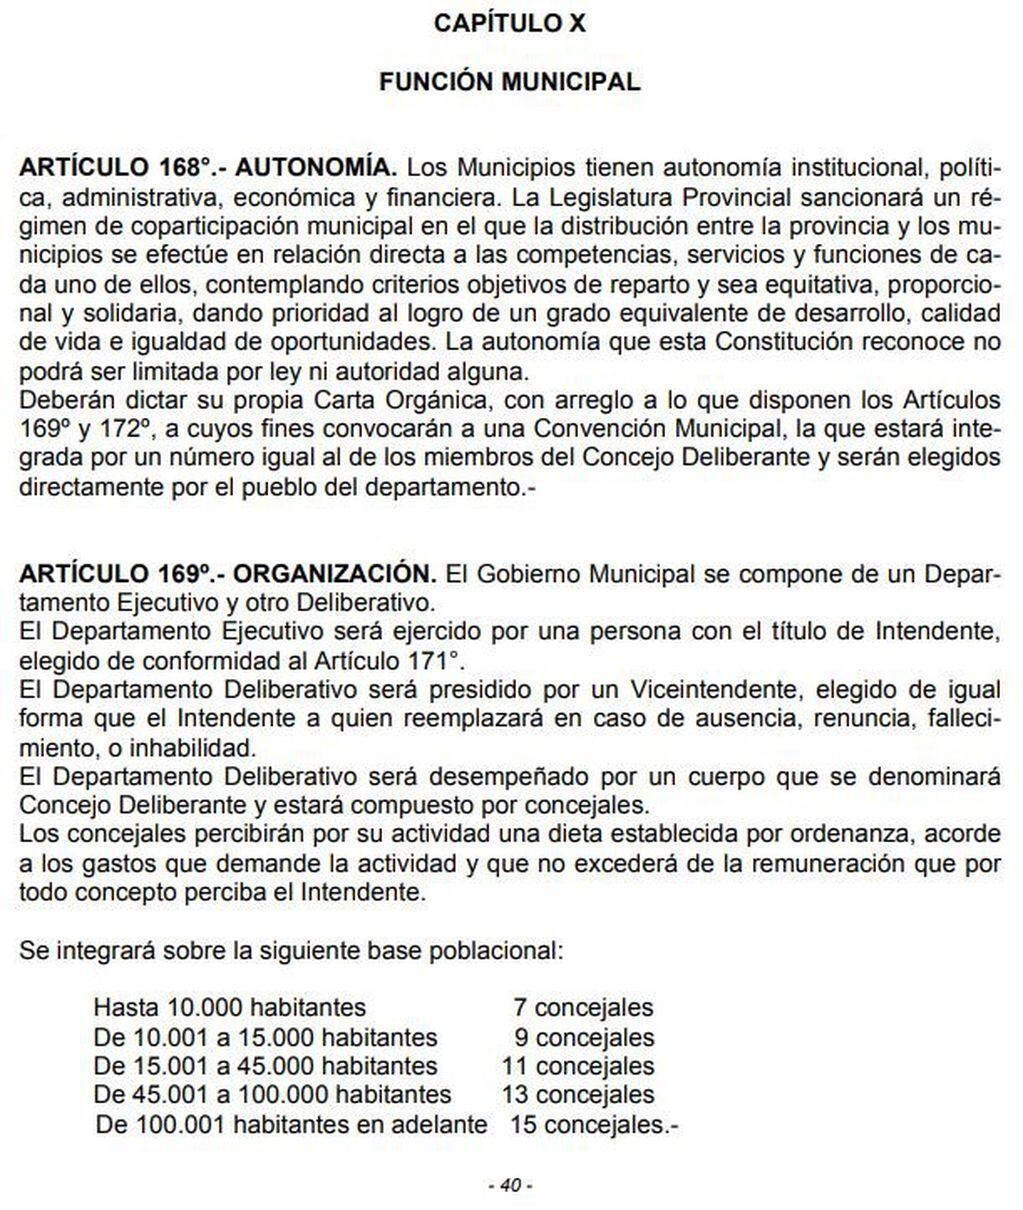 Capítulo X - Función Municipal de la Constitución de La Rioja